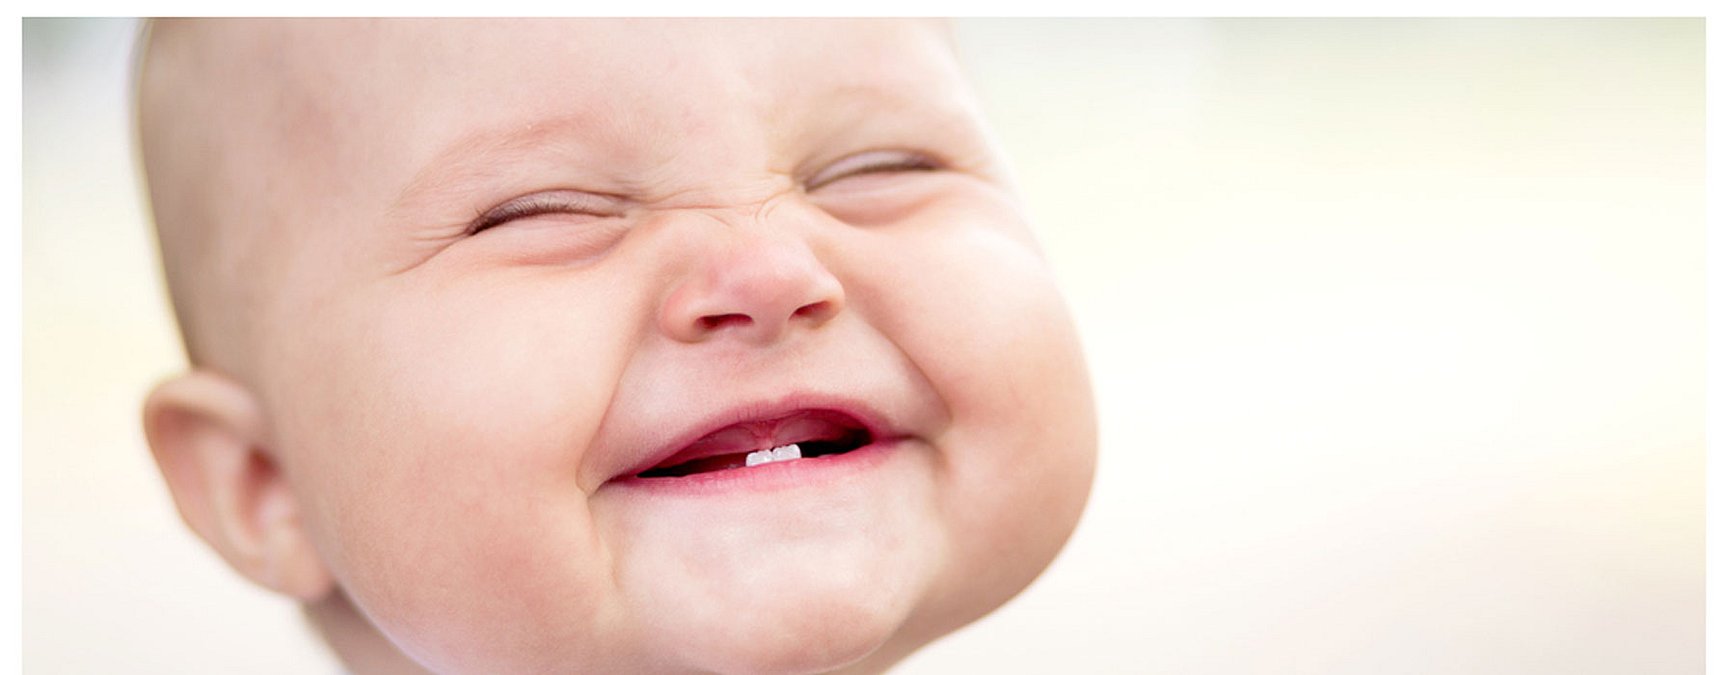 Comment soulager bébé quand il fait ses dents ?